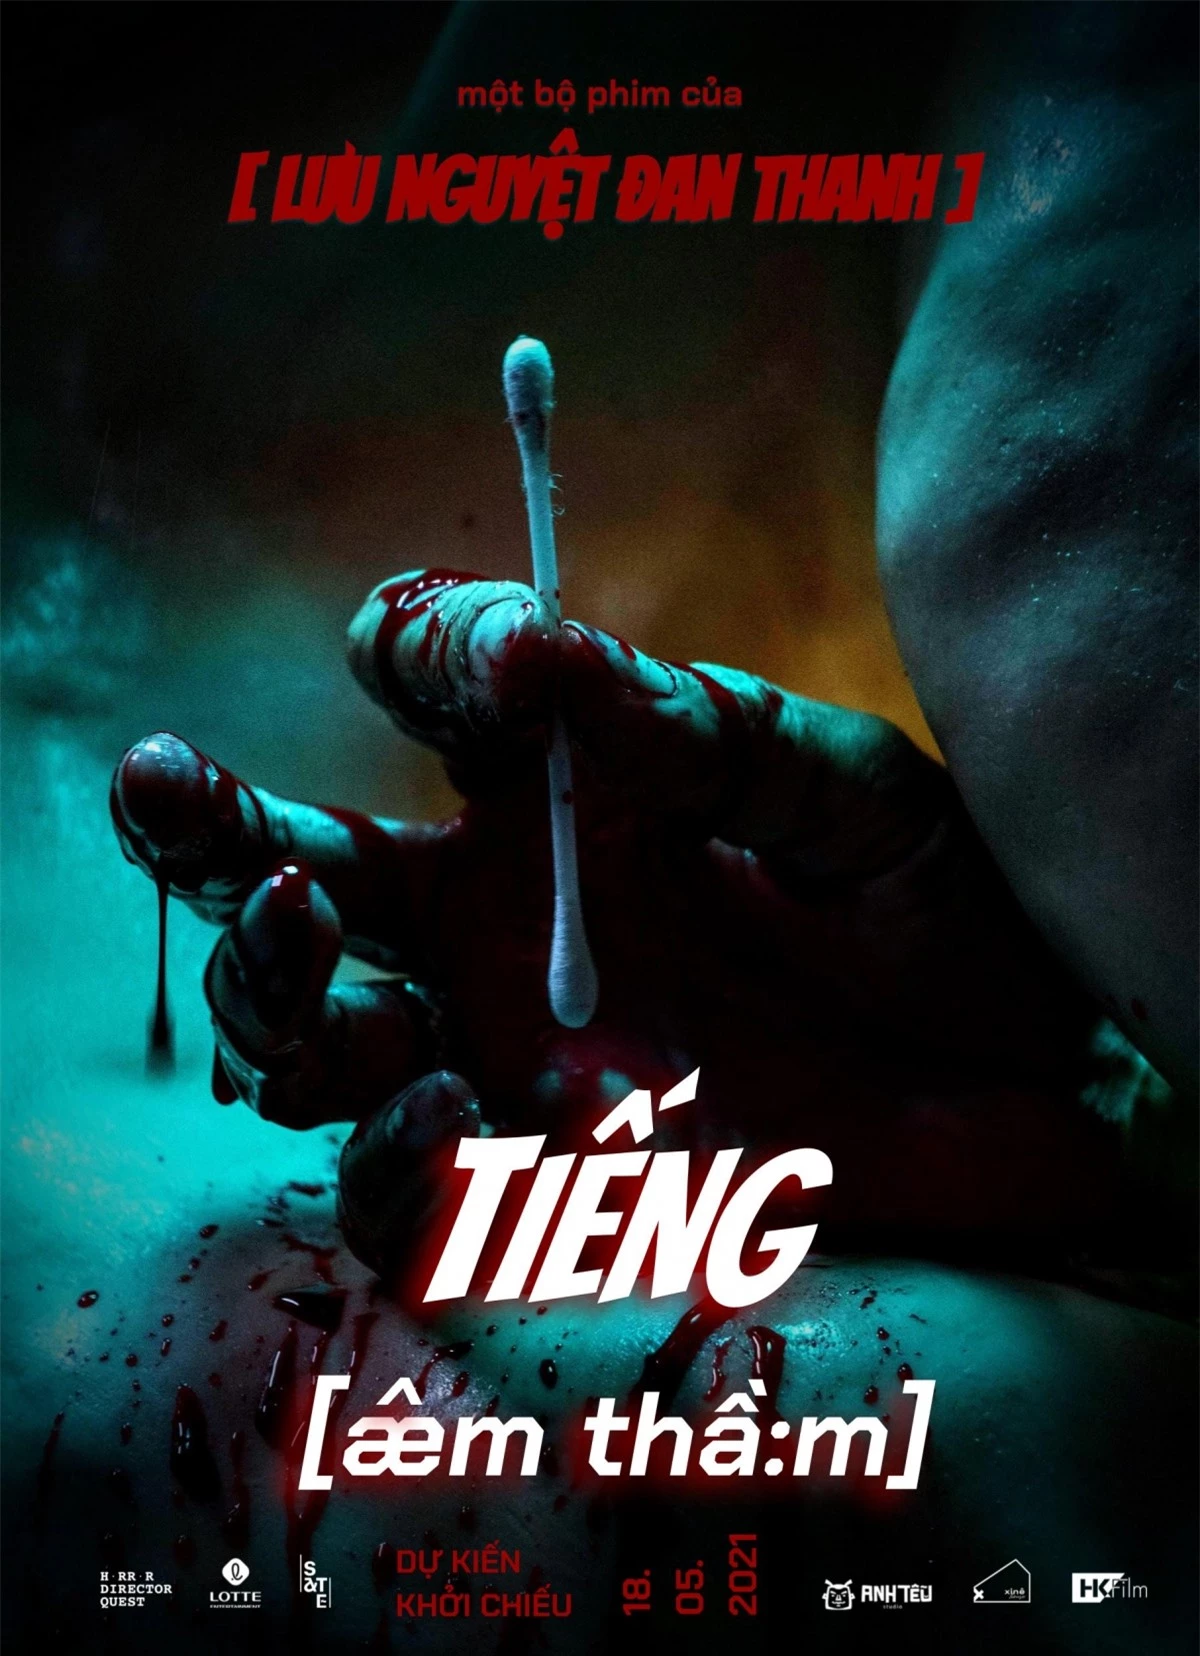 Bộ phim "Tiếng âm thầm" của đạo diễnLưu Nguyệt Đan Thanh.